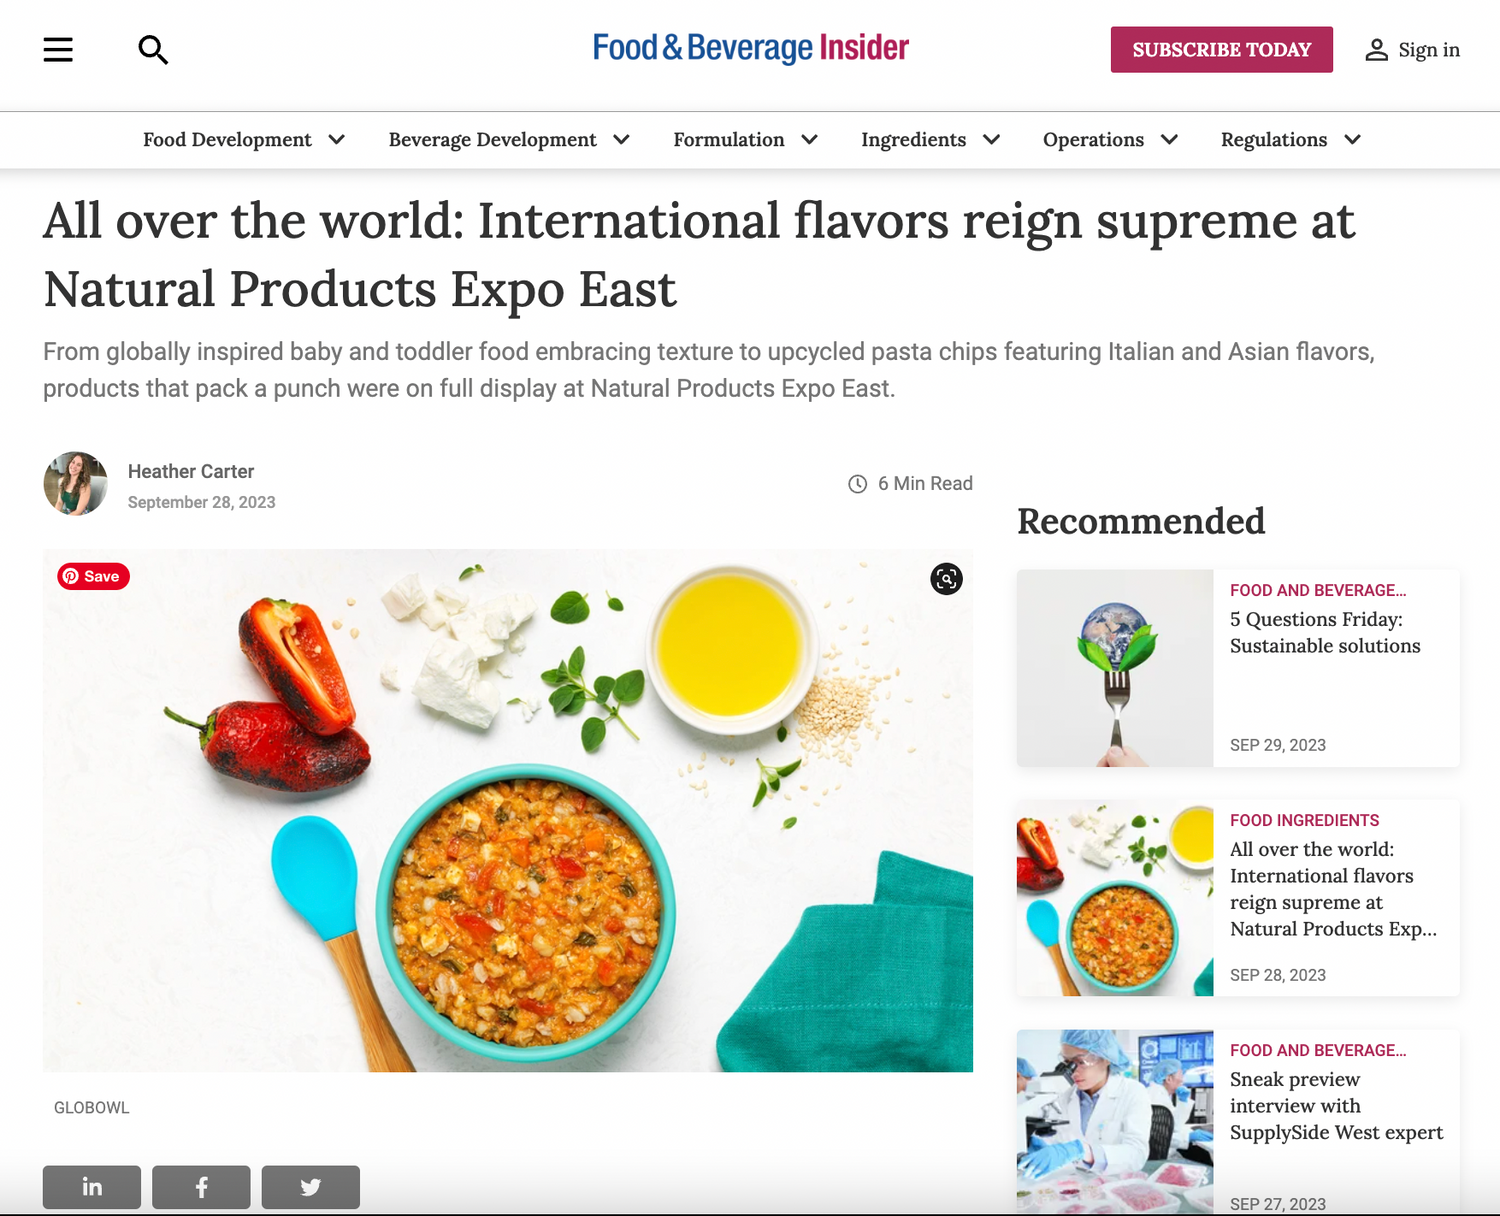 Food & Beverage Insider: International Flavors Reign Supreme